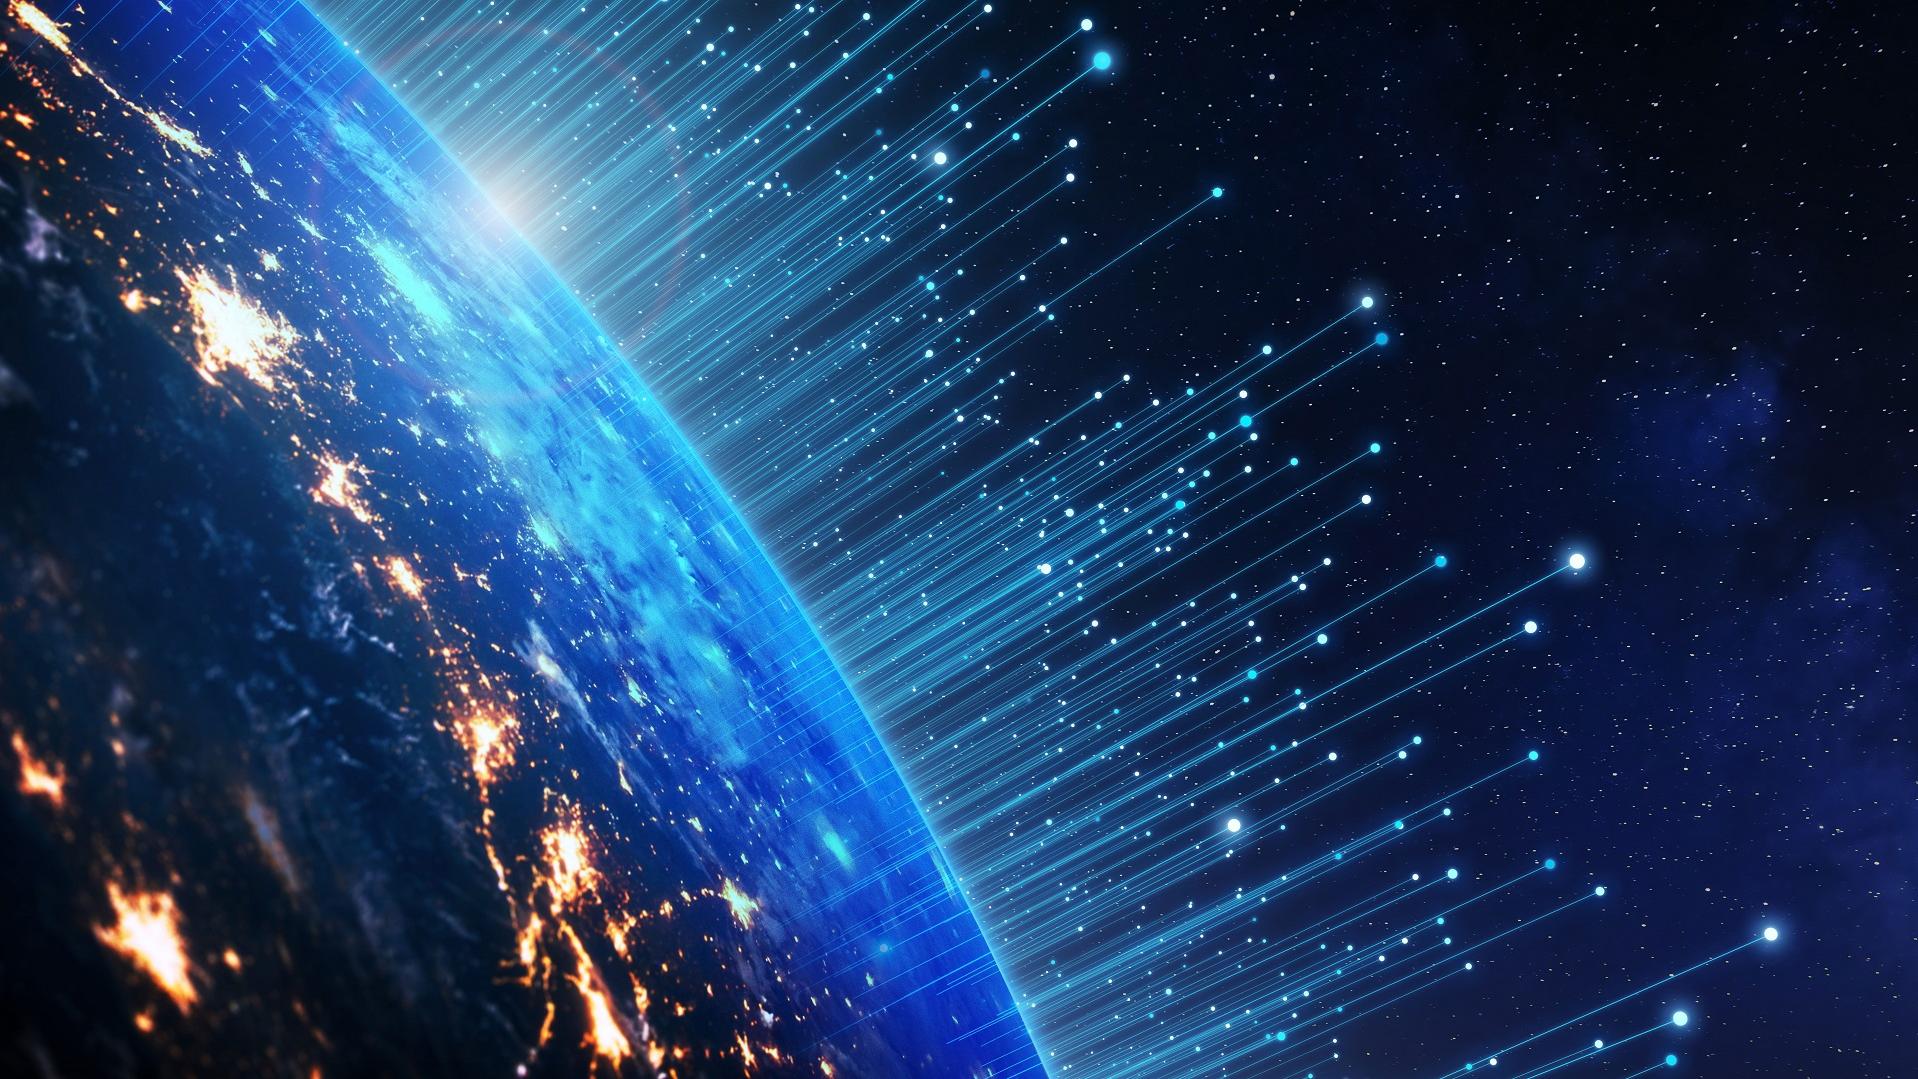 Telekommunikationstechnik mit Verbindungen rund um die Erde vom Weltraum aus gesehen